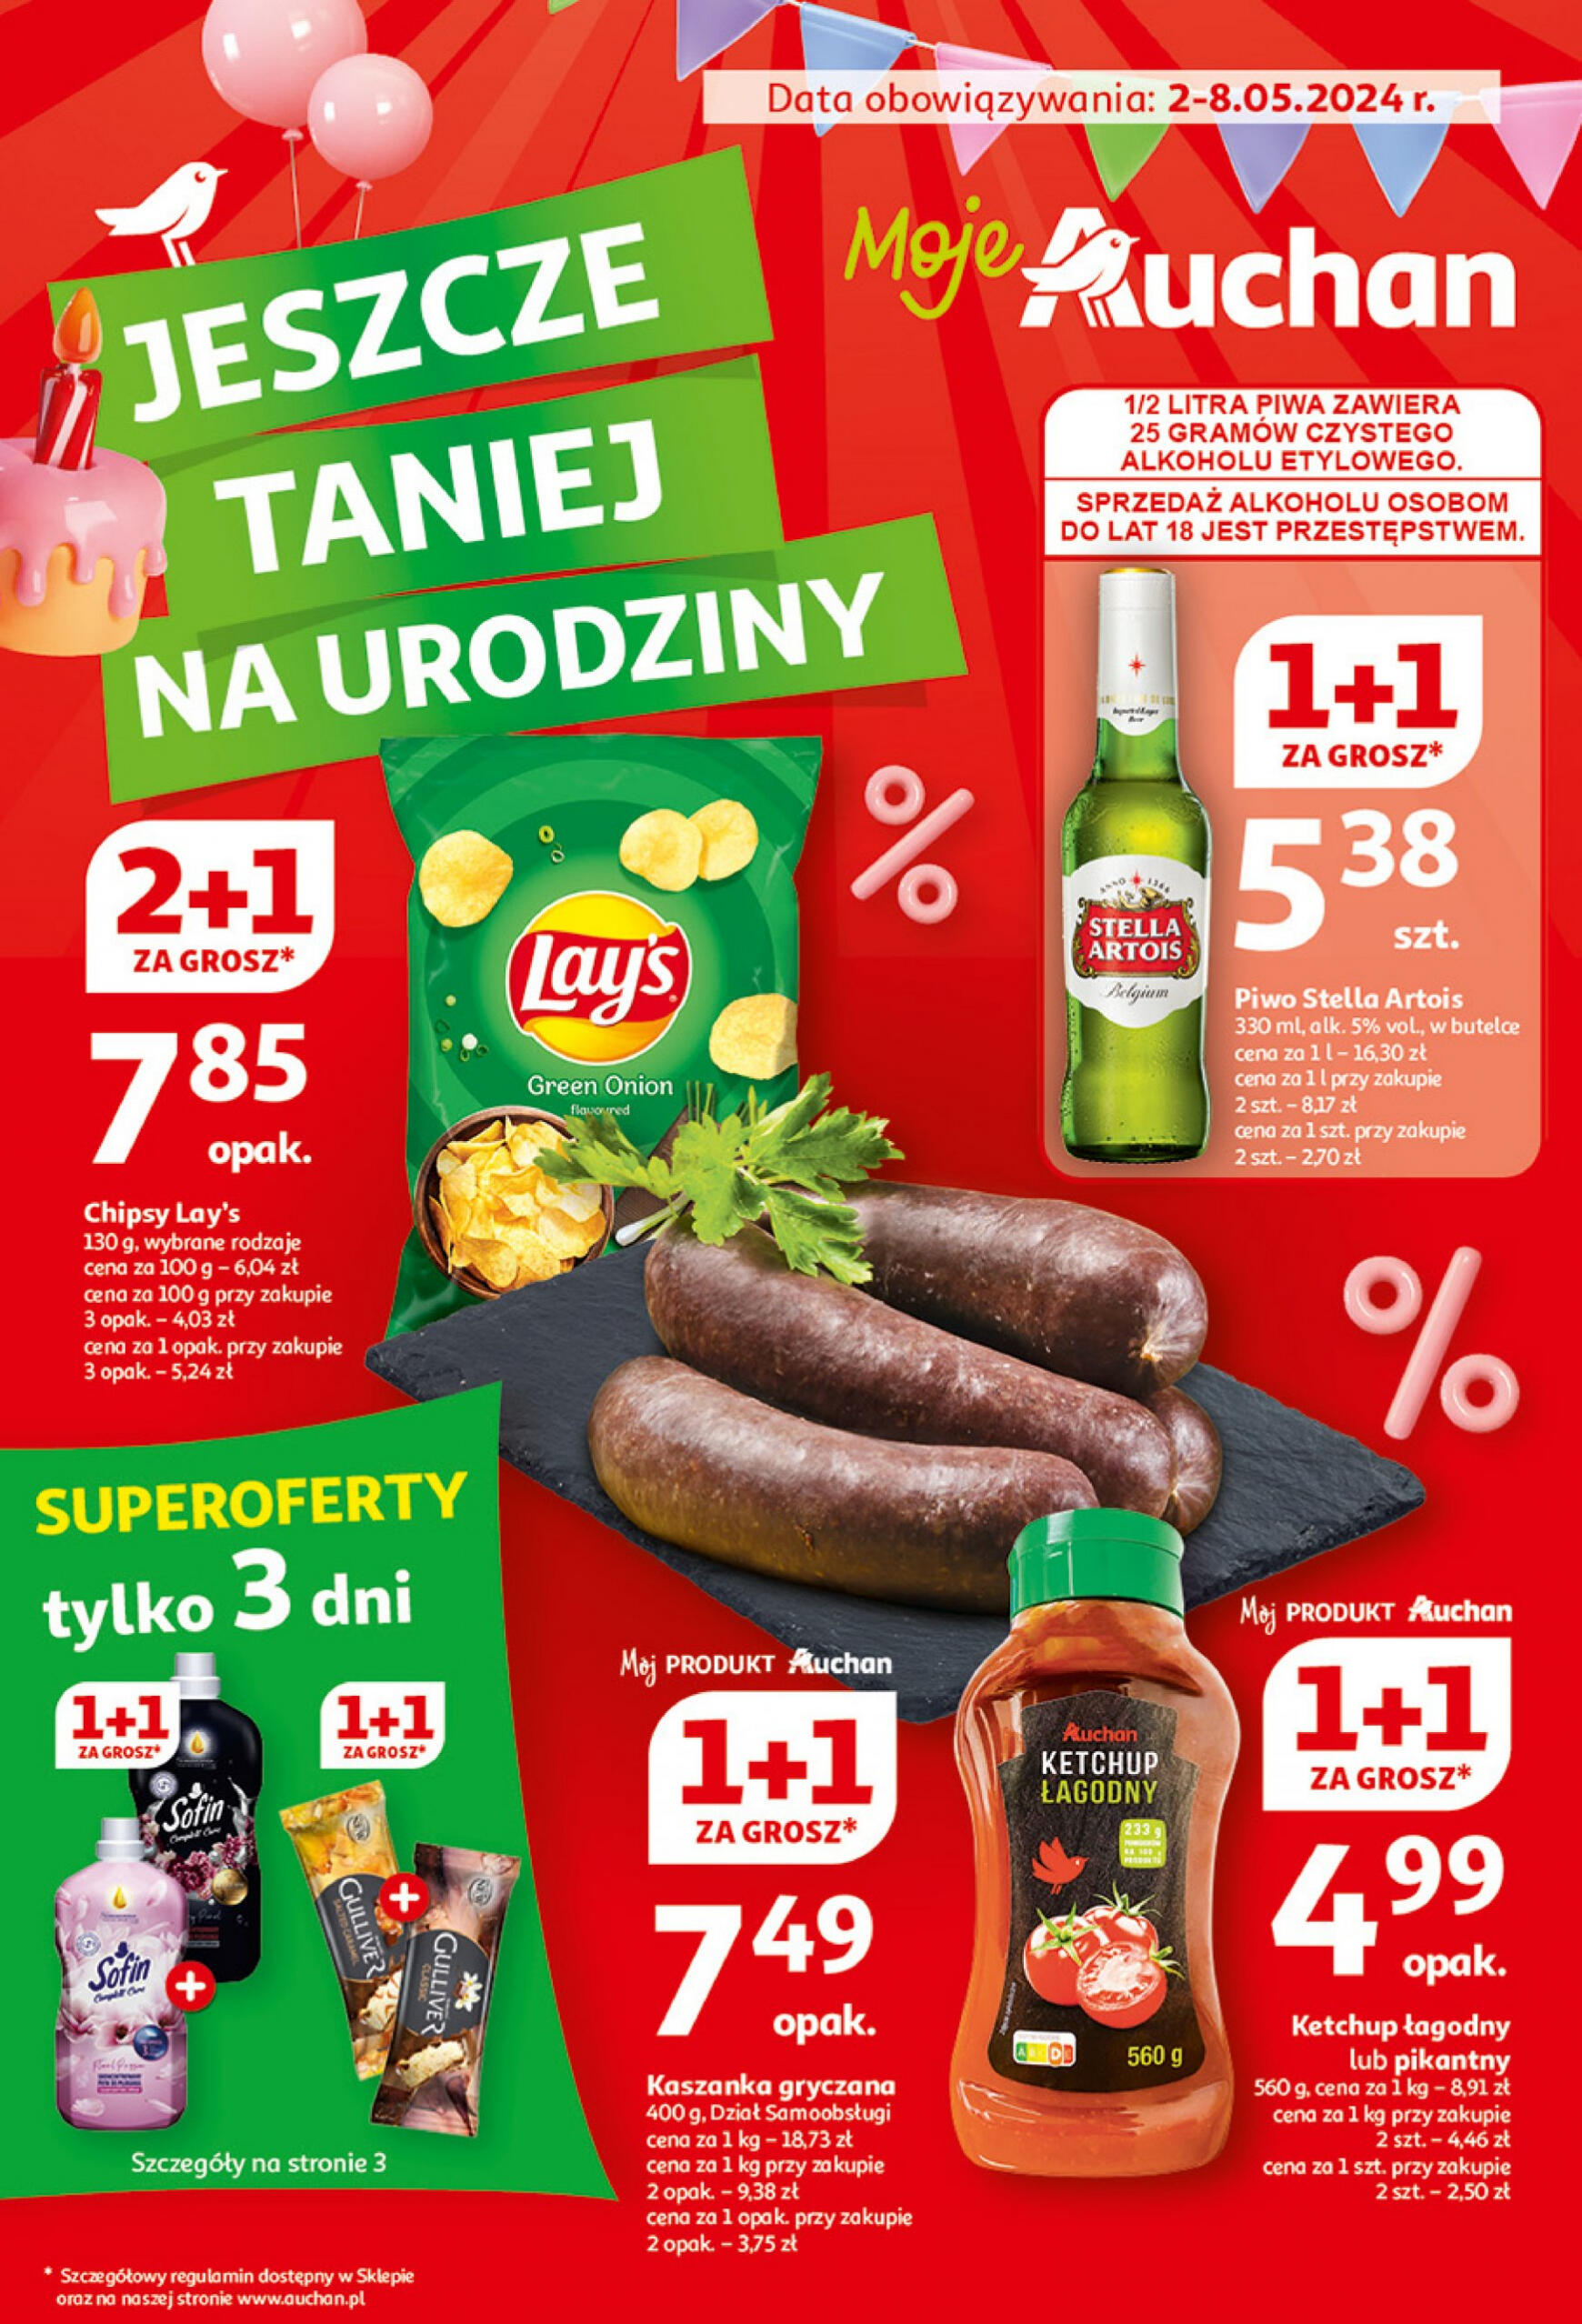 auchan - Moje Auchan - Gazetka Jeszcze taniej na urodziny gazetka aktualna ważna od 02.05. - 08.05.